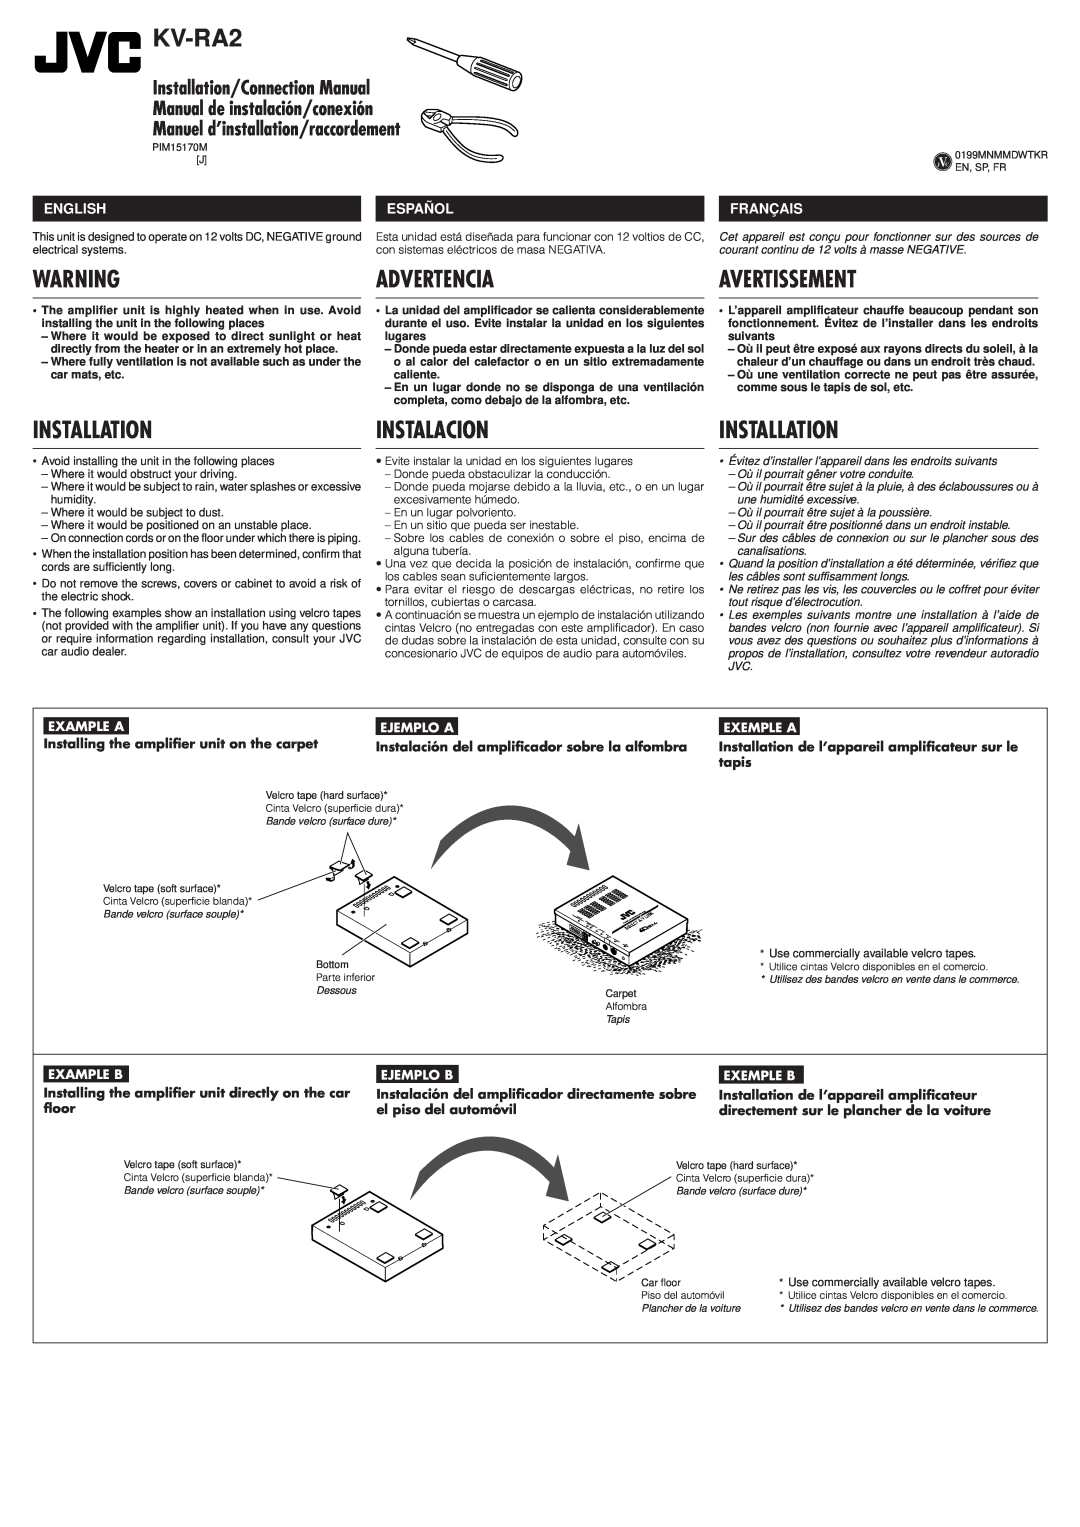 JVC 0199MNMMDWTKR manual Advertencia, Instalacion, Installation/Connection Manual, Manual de instalación/conexión 